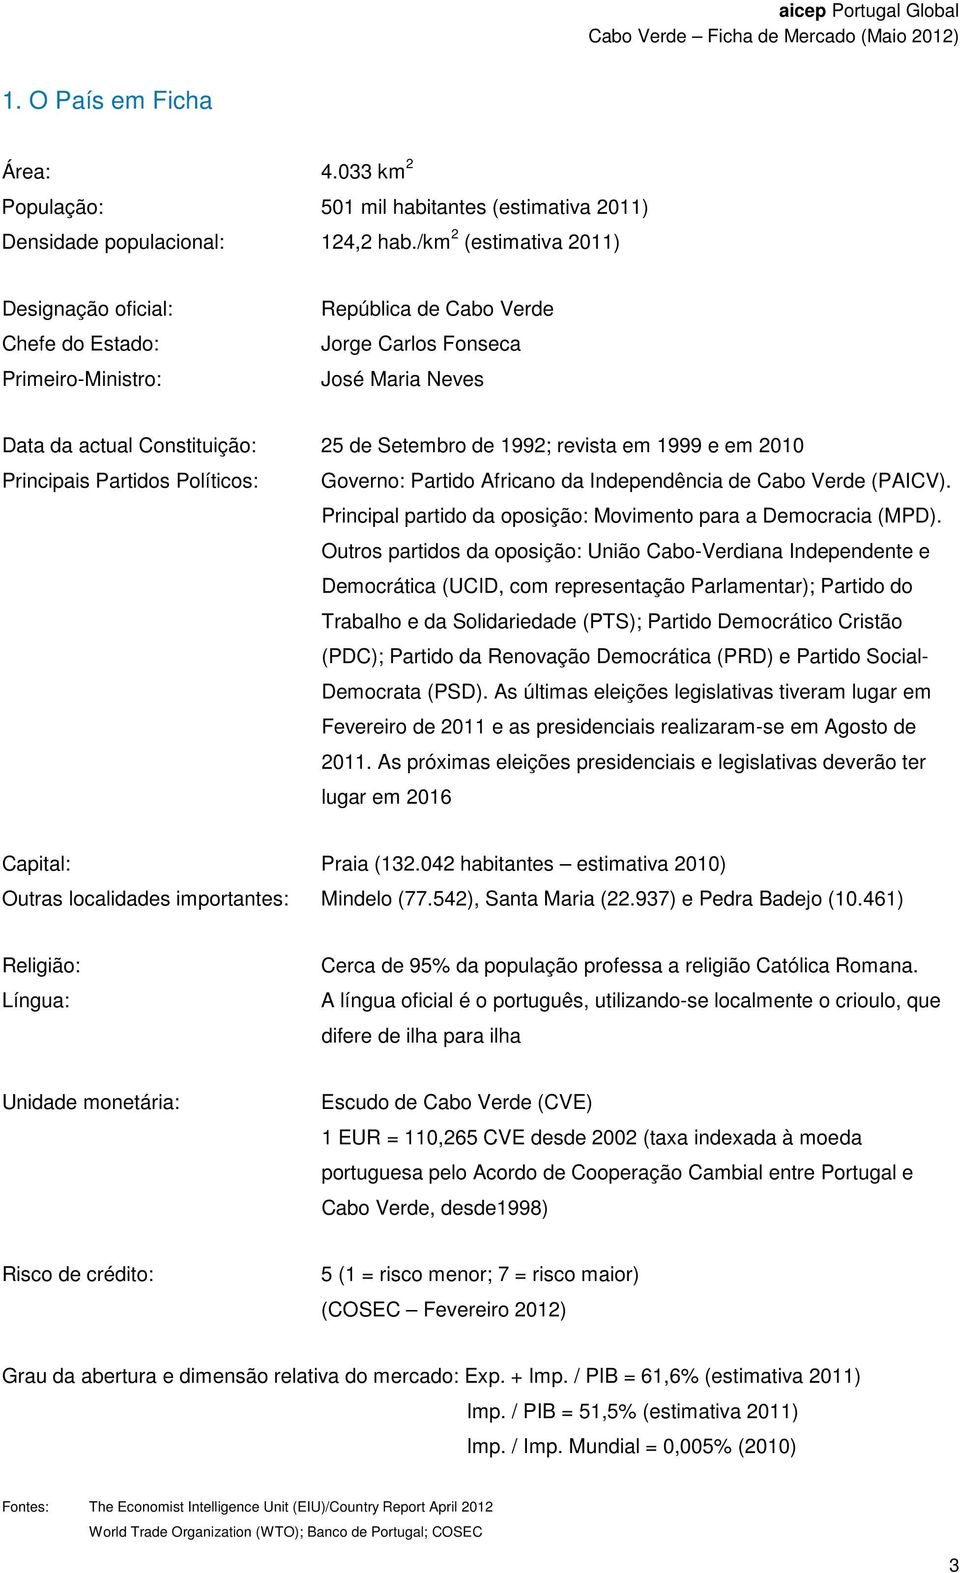 revista em 1999 e em 2010 Principais Partidos Políticos: Governo: Partido Africano da Independência de Cabo Verde (PAICV). Principal partido da oposição: Movimento para a Democracia (MPD).